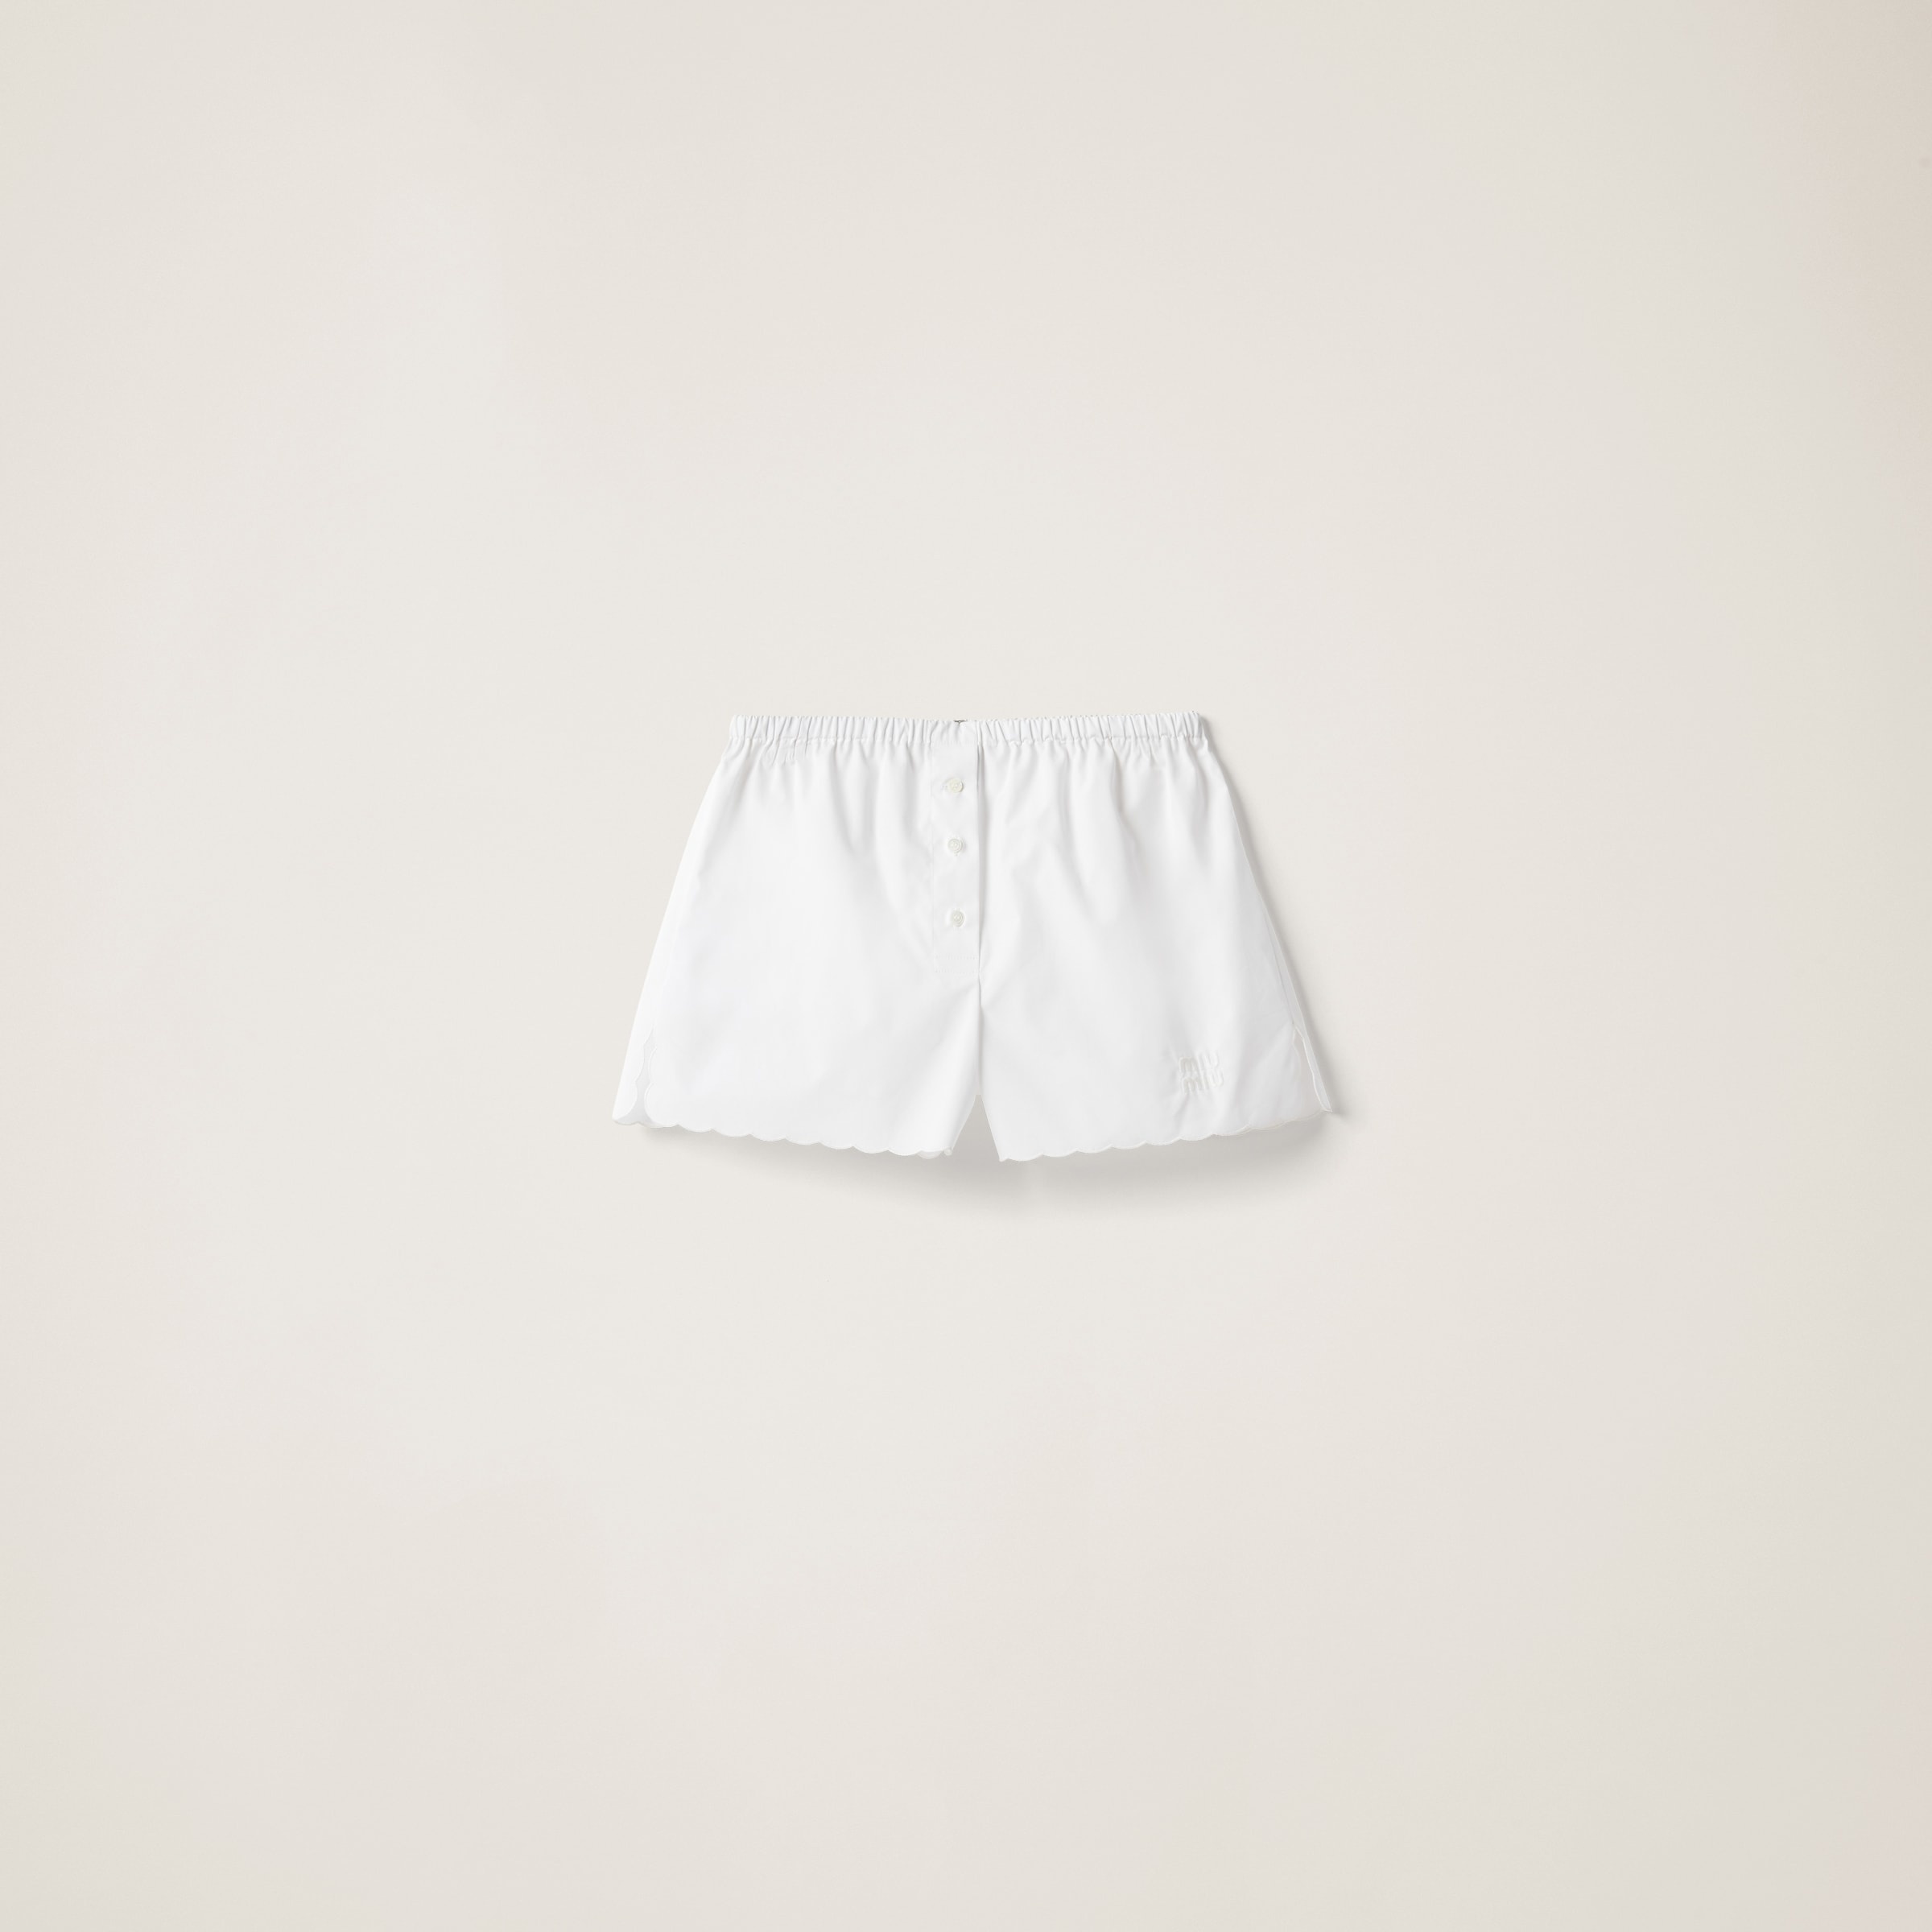 Miu Miu Women's Boxer Shorts in White